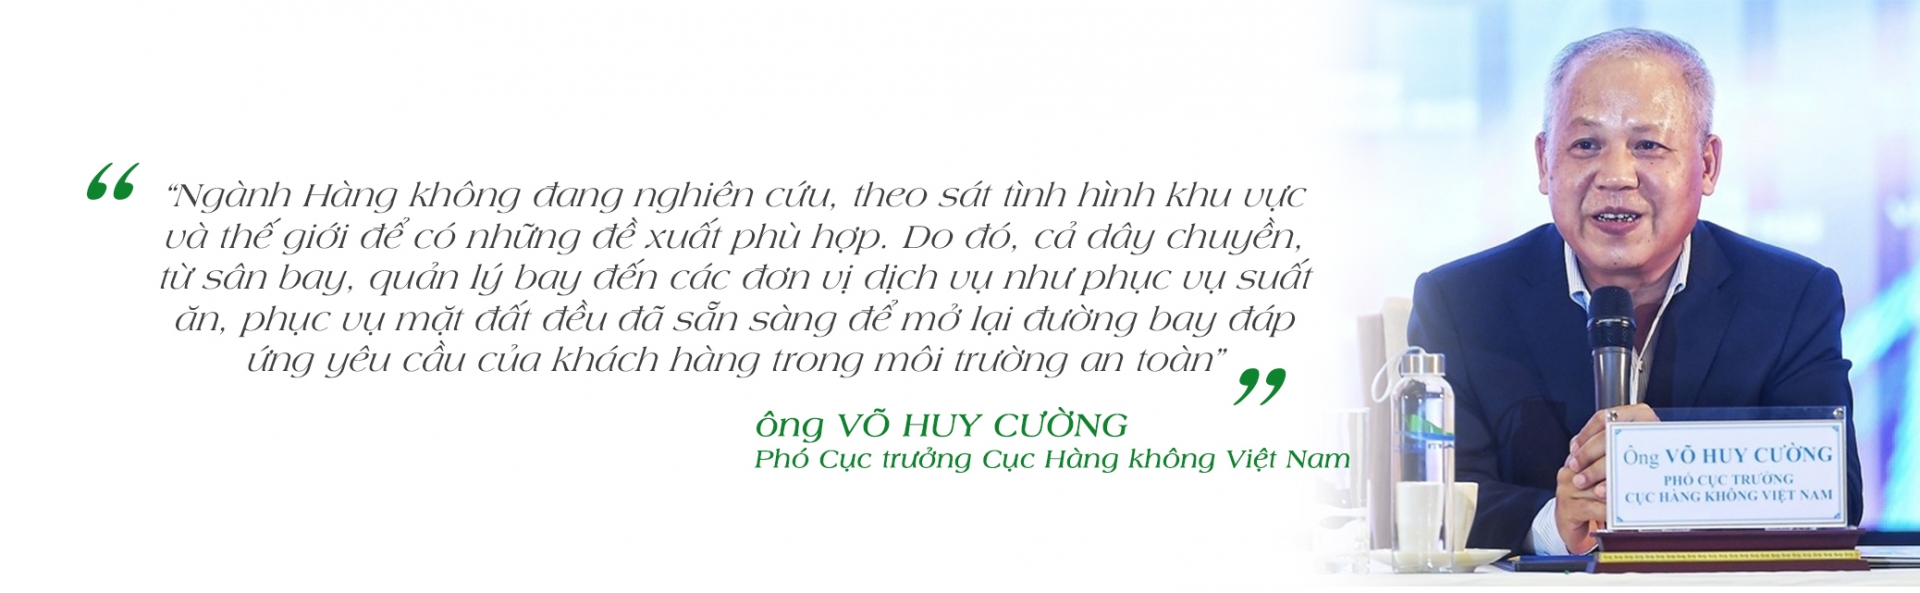 megastory su phuc hoi hang khong viet hau covid 19